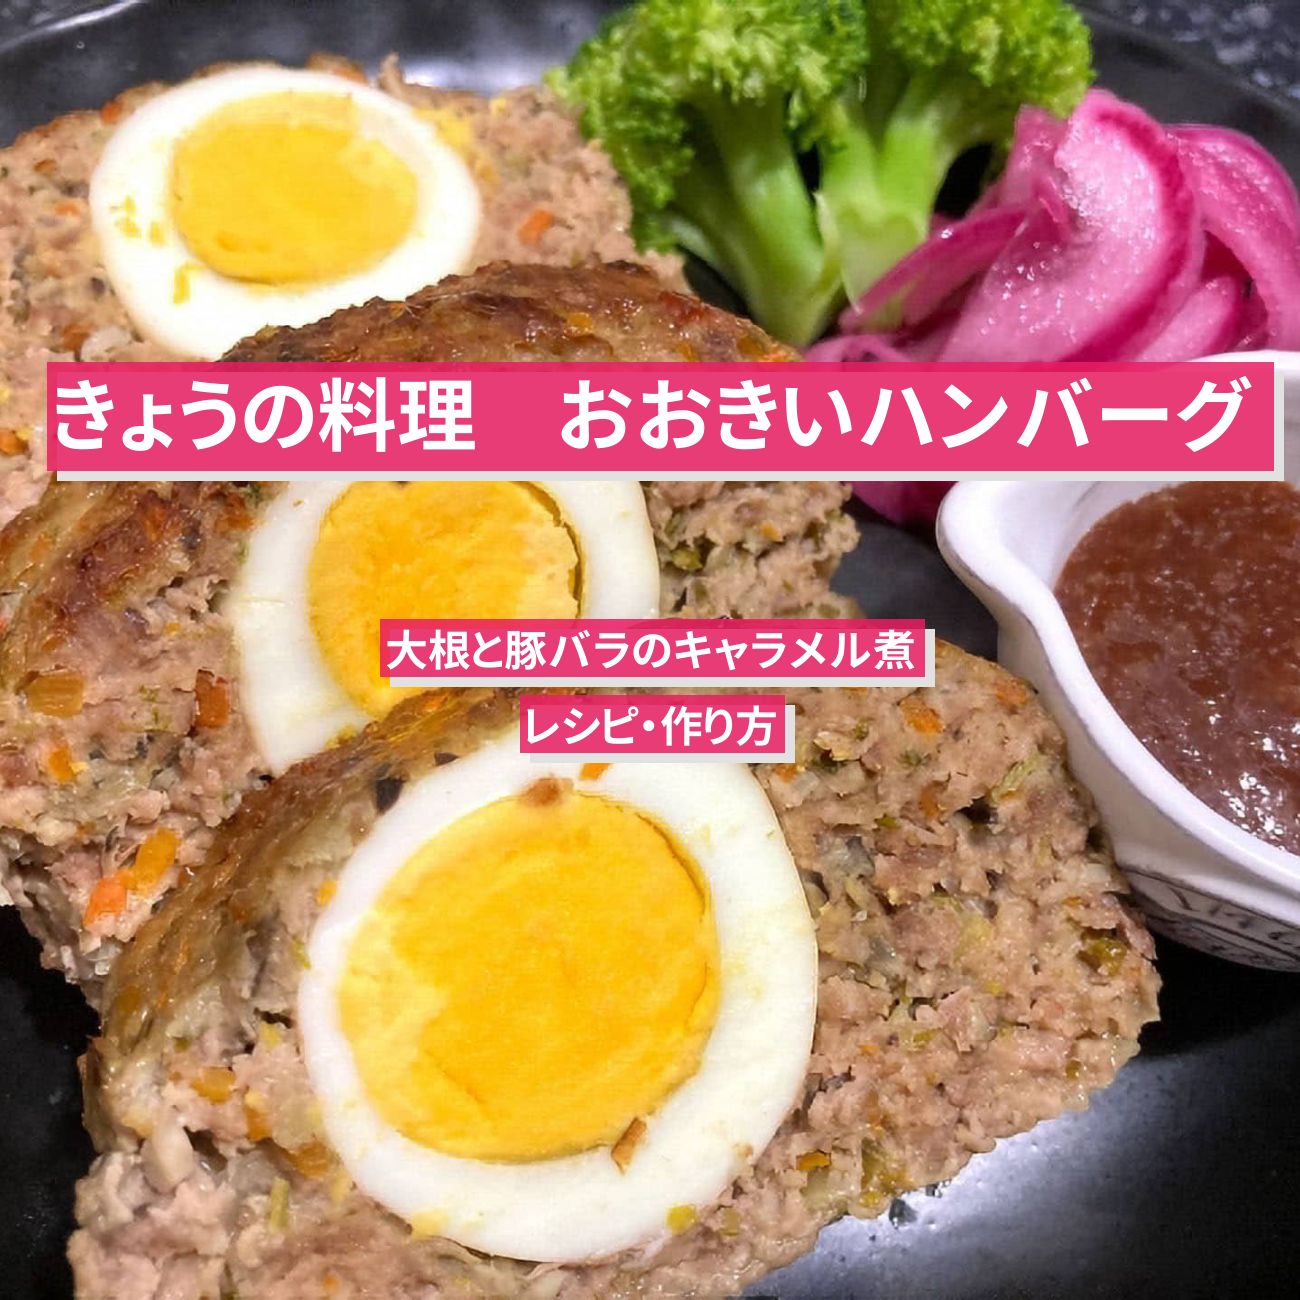 【きょうの料理】ミートローフ『おおきいハンバーグ』志麻さんのレシピ・作り方